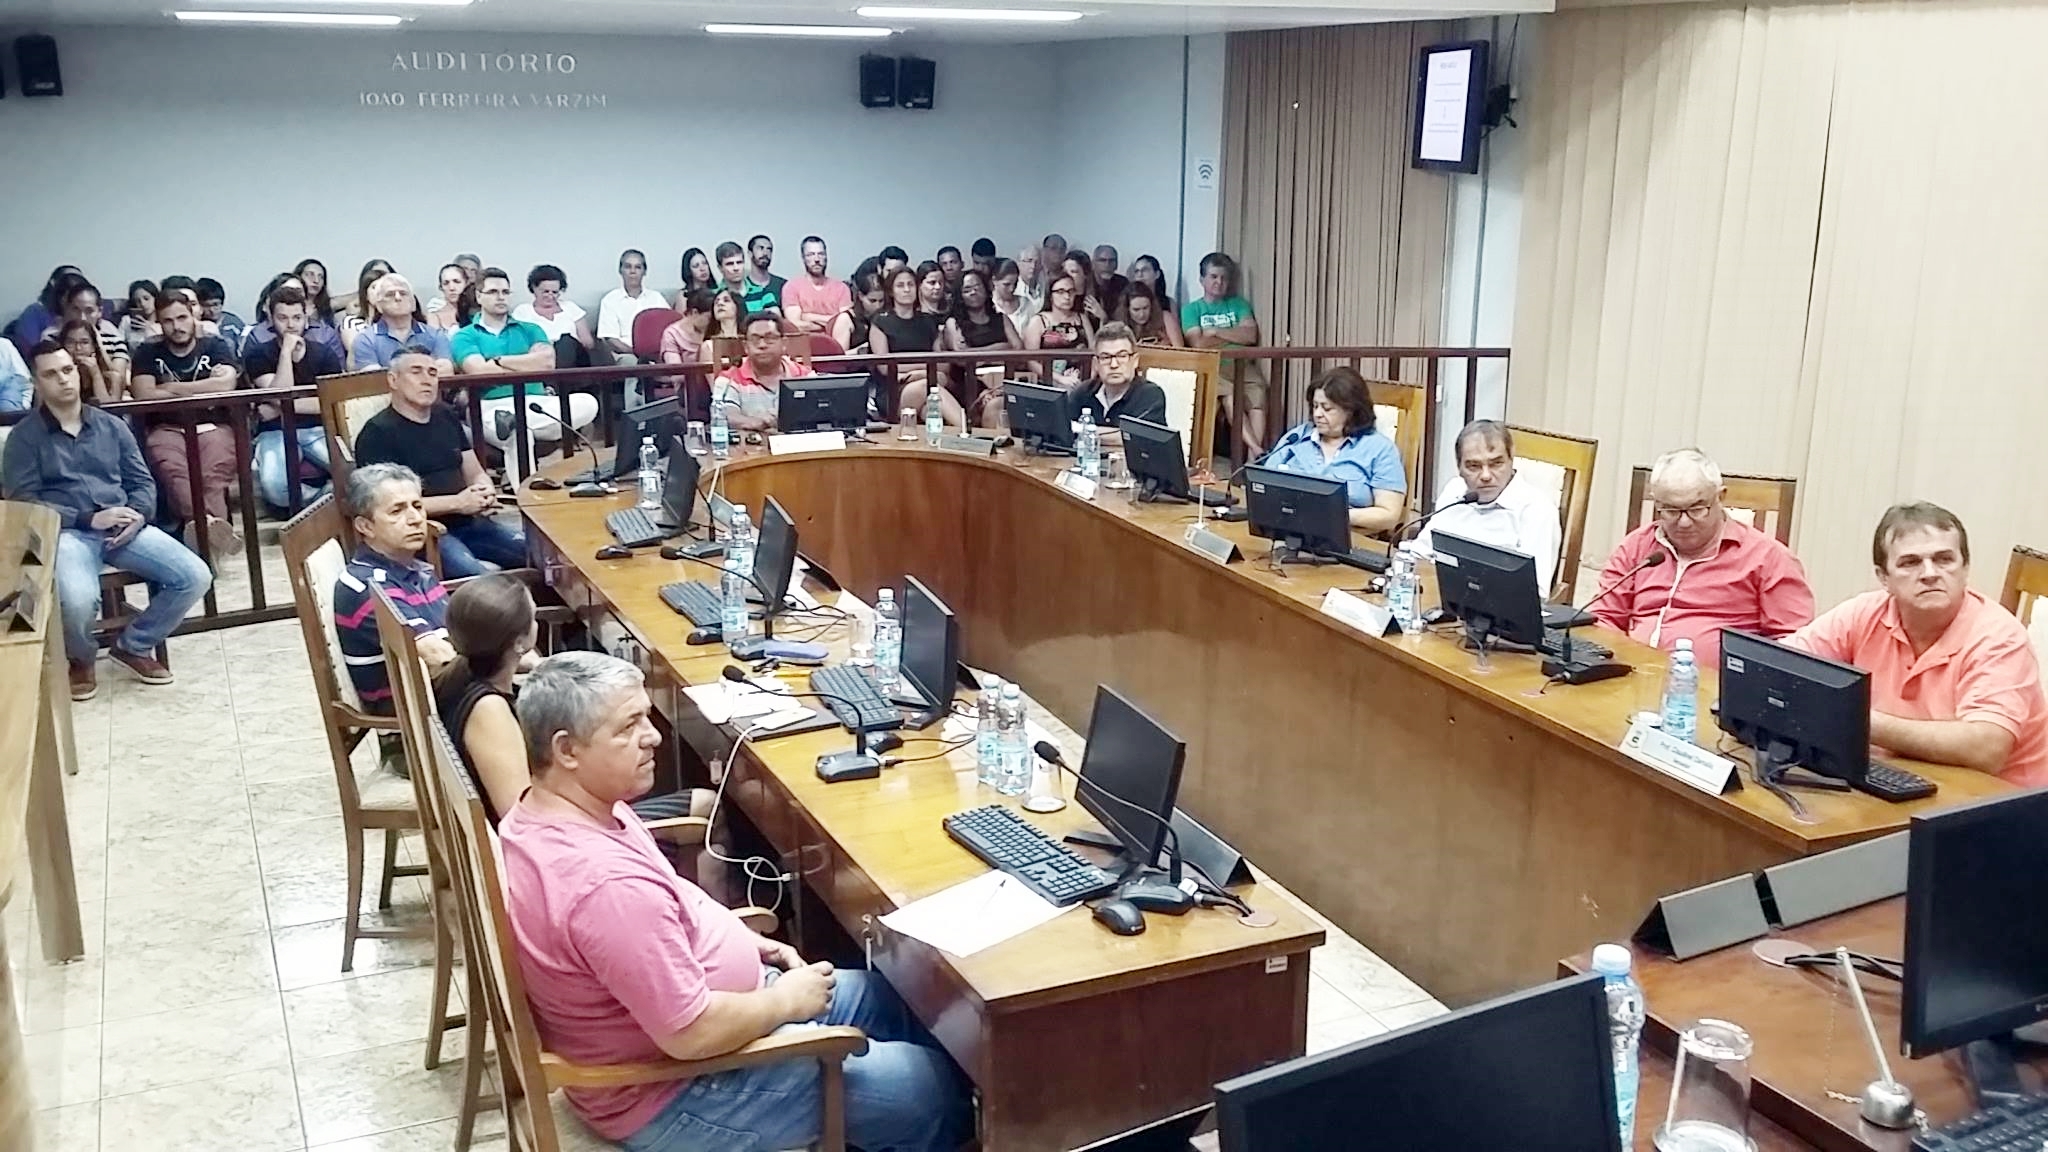 Câmara Municipal realiza Audiência Pública do Plano Diretor nesta quarta (09.05.18)